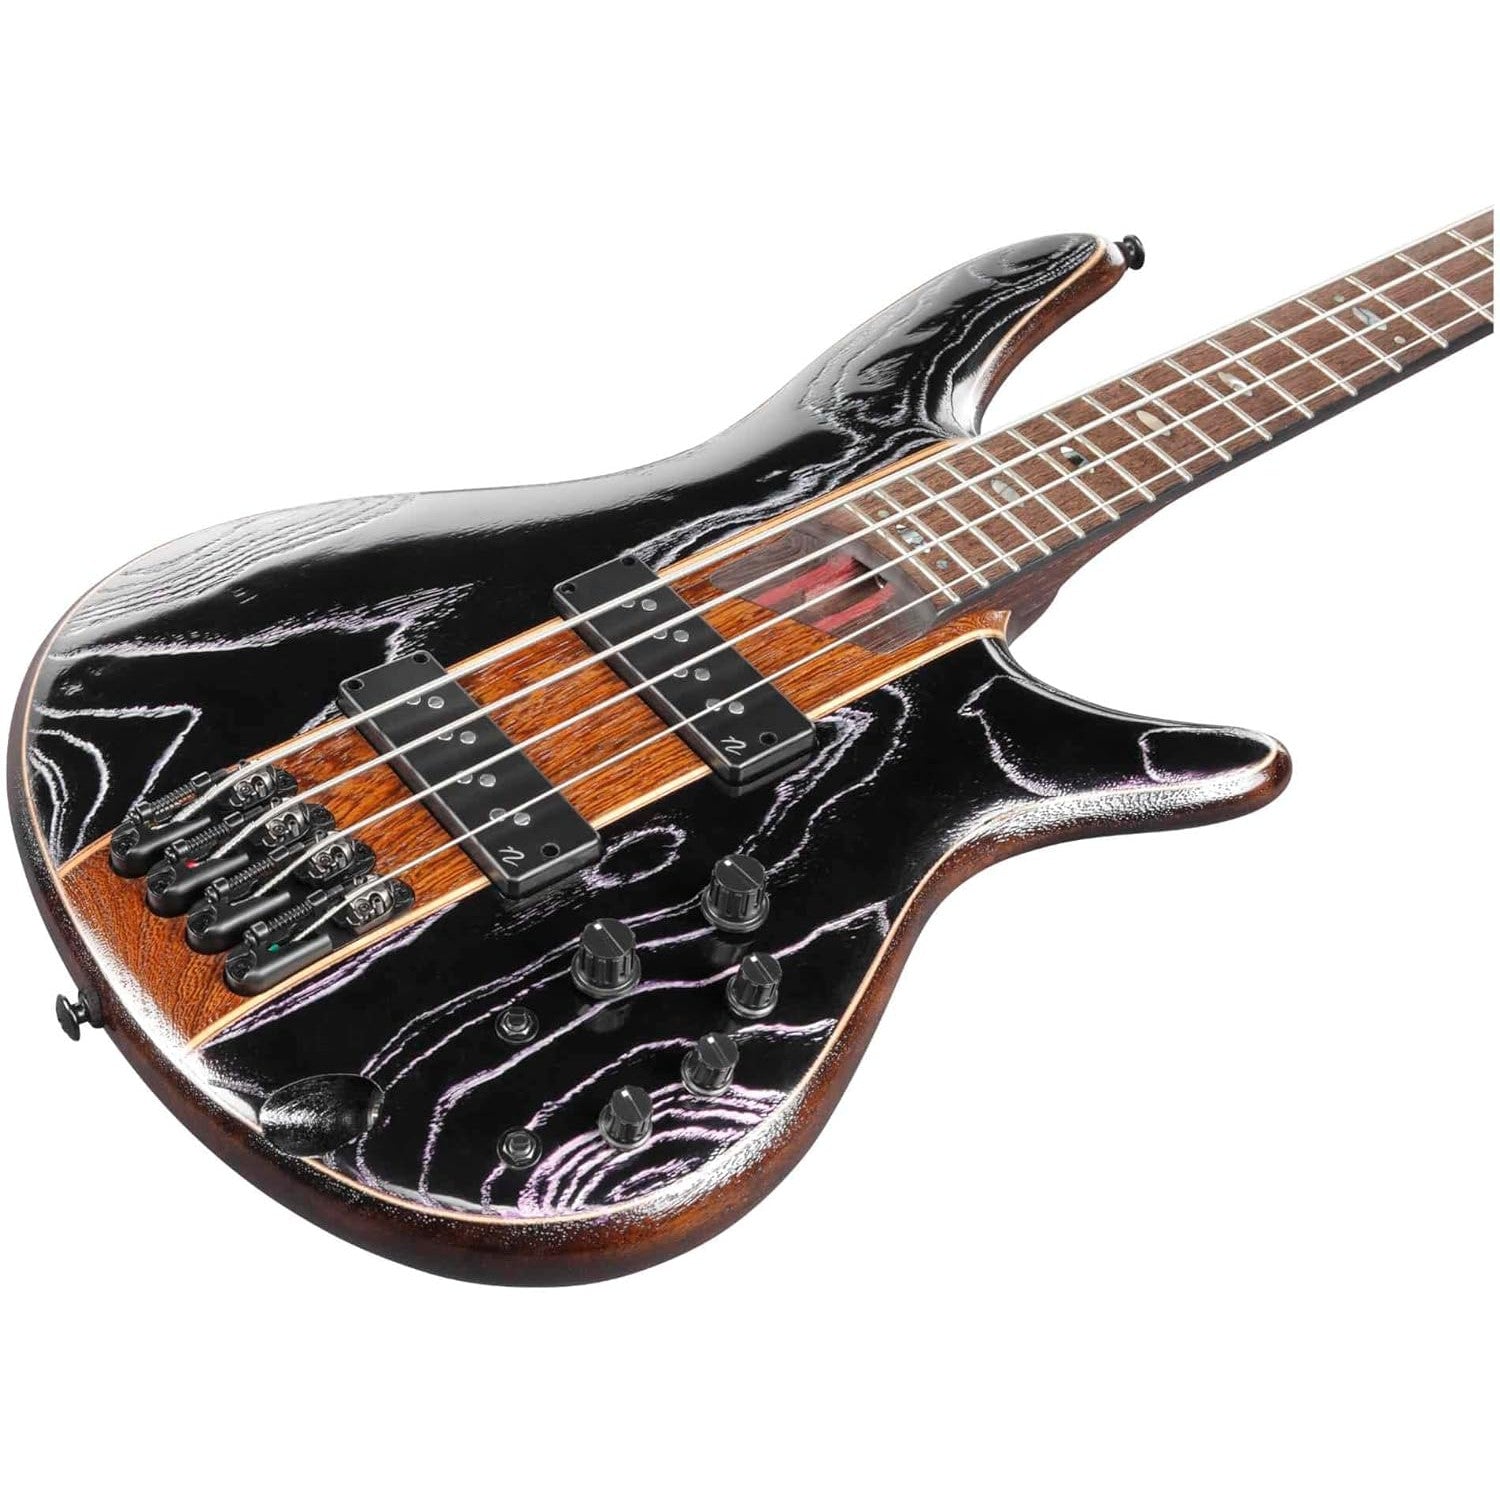 Đàn Guitar Bass Ibanez SR1300SB - SR Premium, Magic Wave Low Gloss - 4 Strings - Việt Music